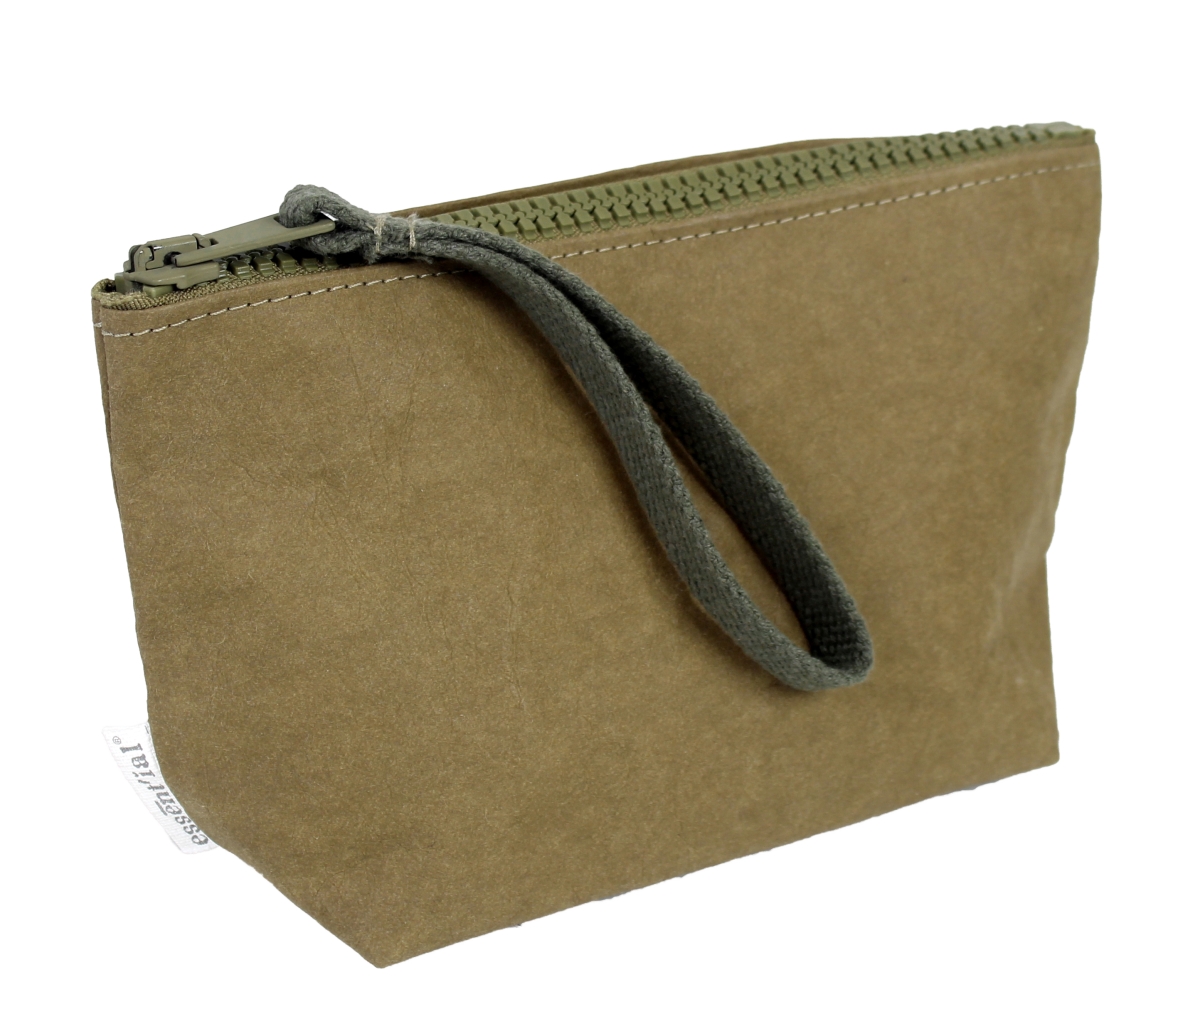 Essential Es001916 Pouchette Handbags, Dark Green - Medium